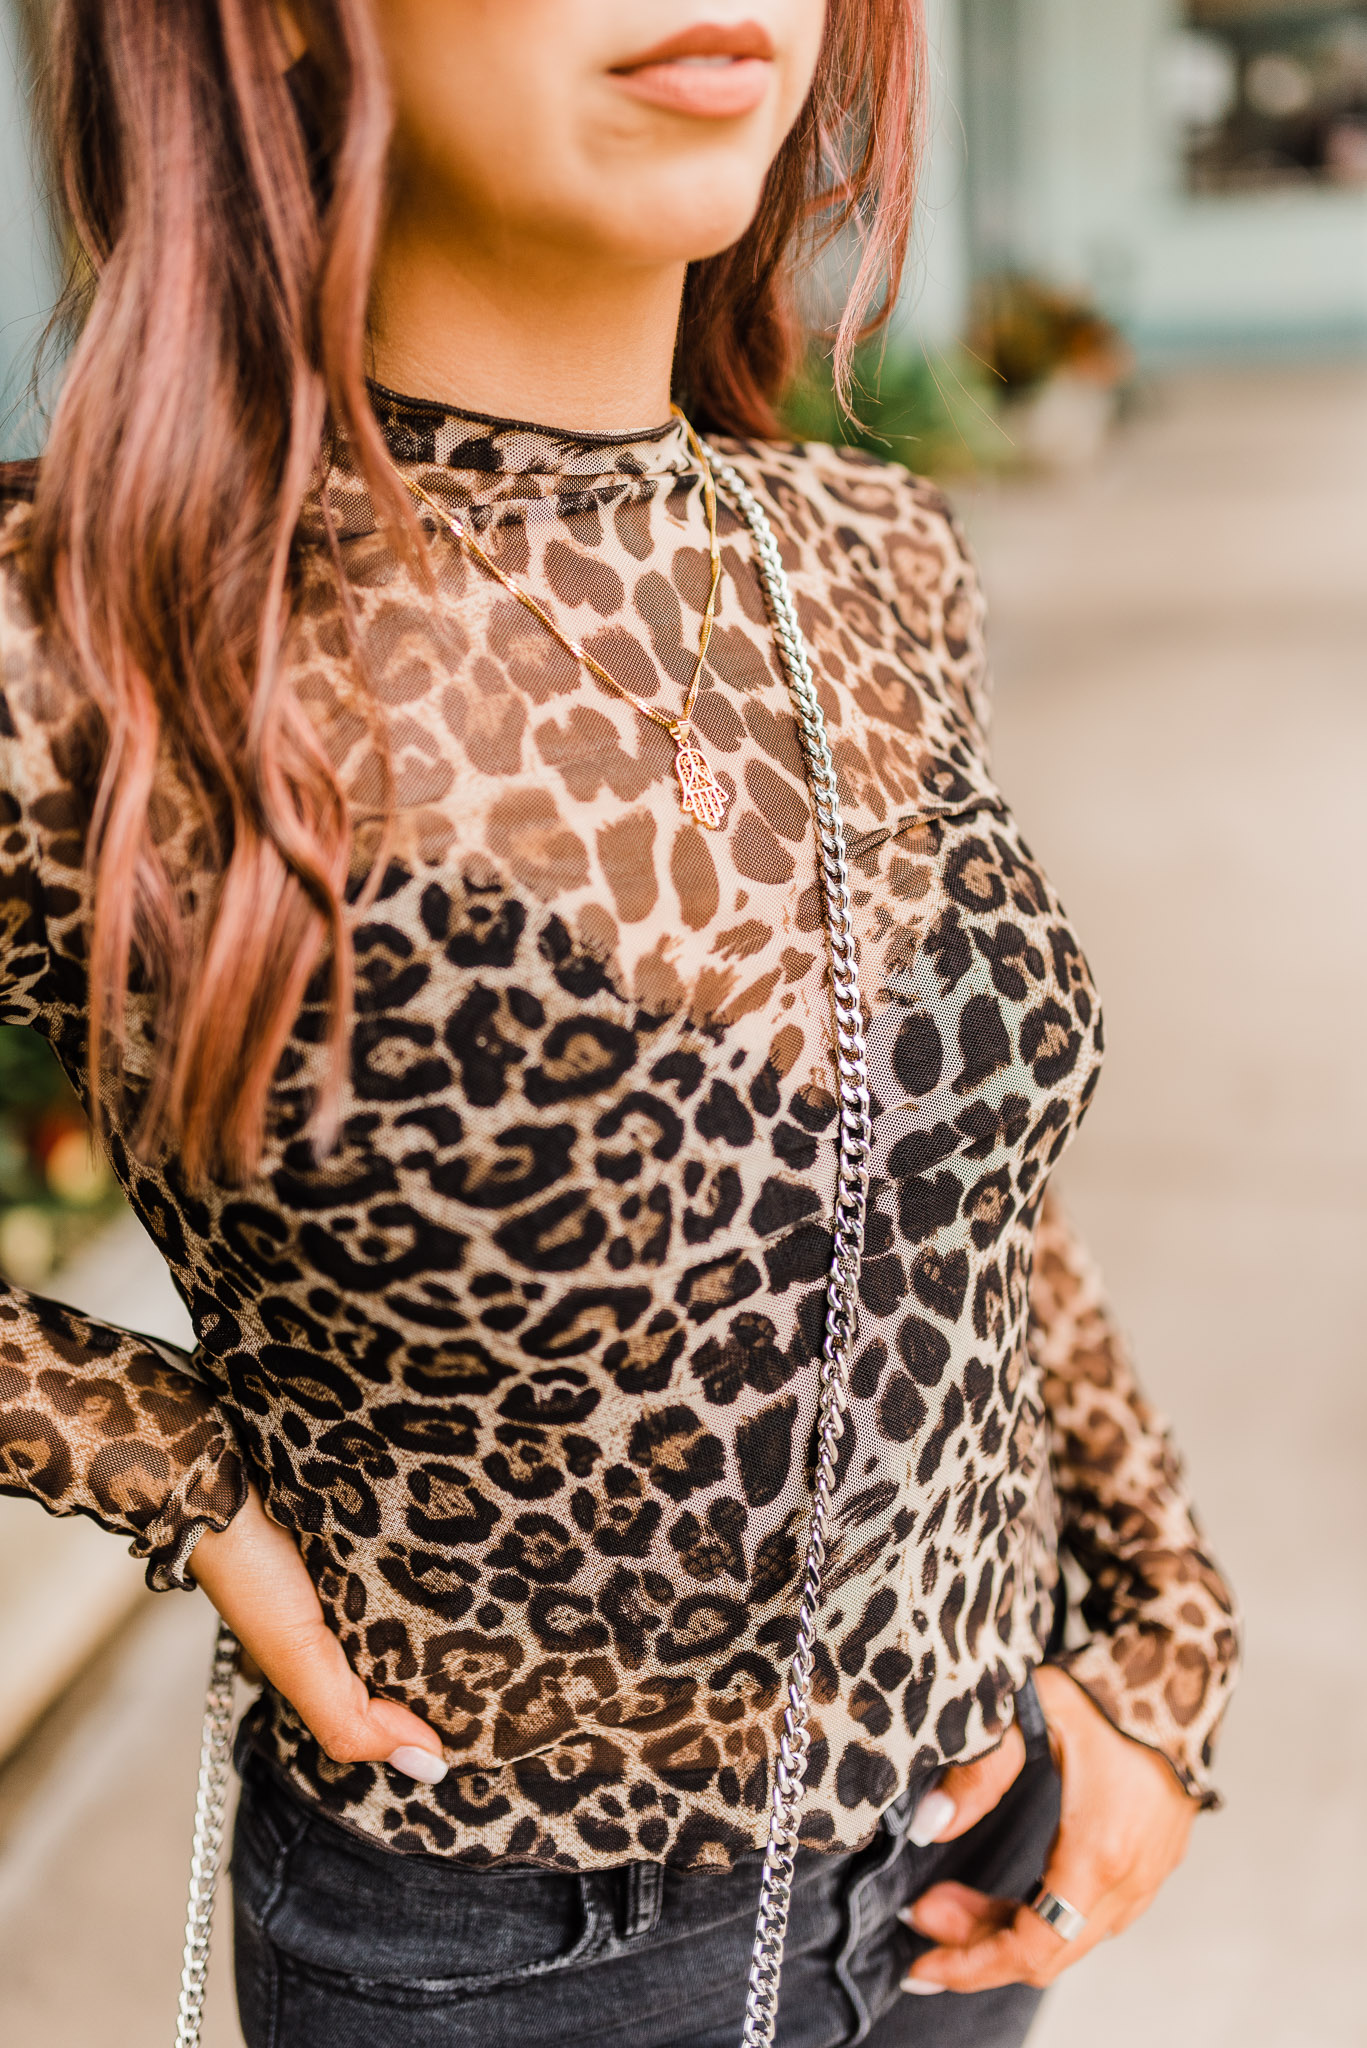 Female fashion blogger detail shot. Cheetah print shirt with chain link purse.